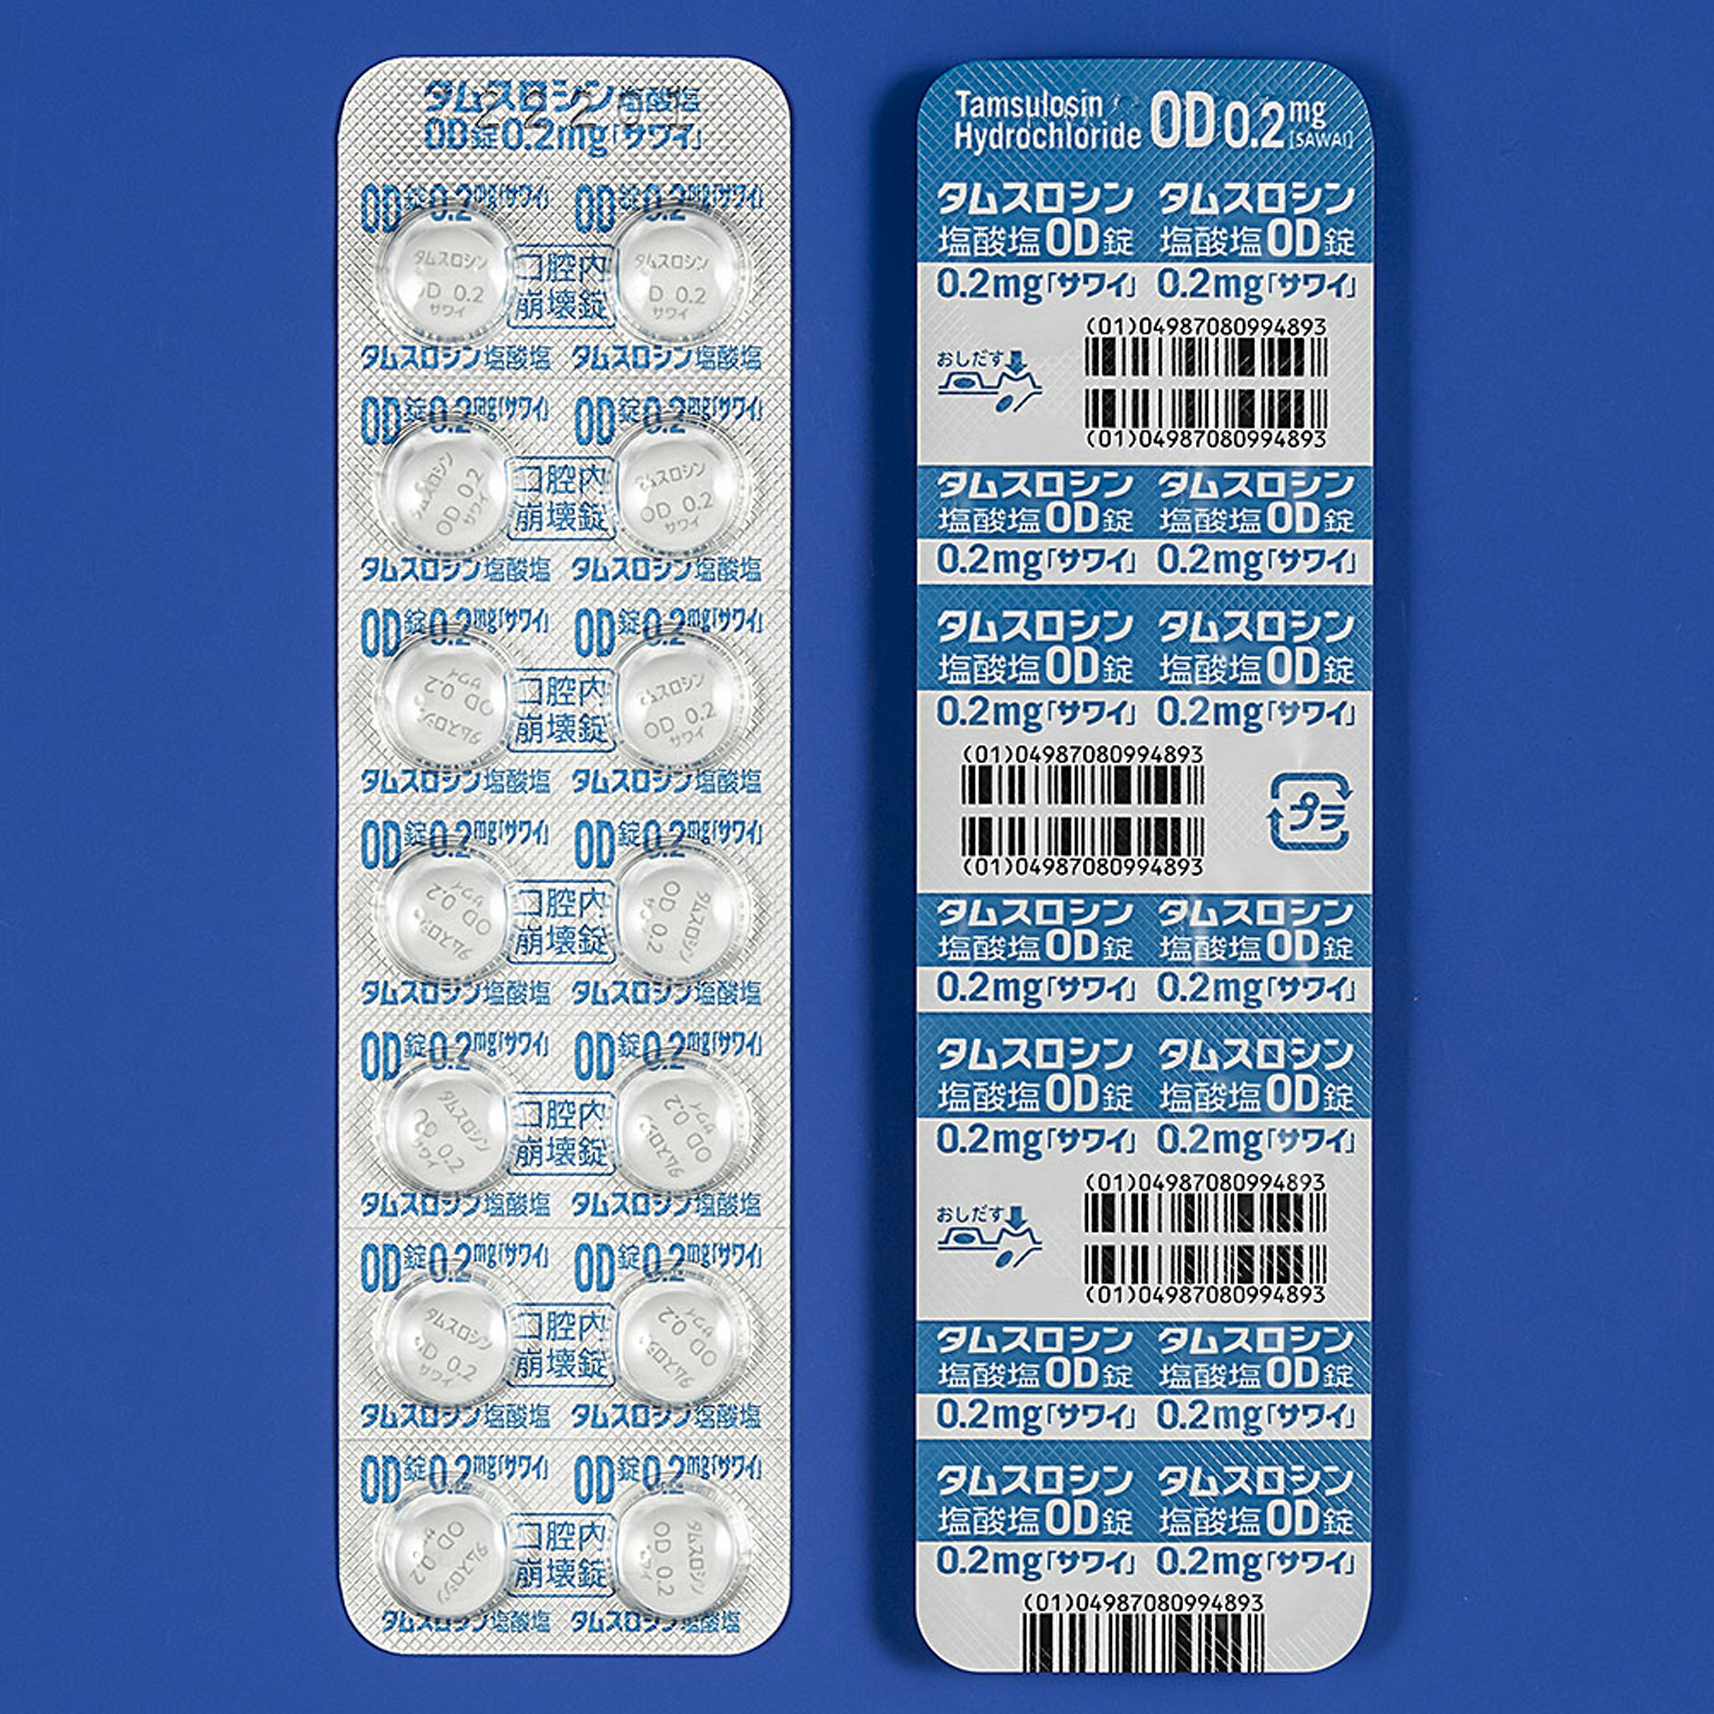 タムスロシン塩酸塩OD錠0.2mg「サワイ」の包装画像2